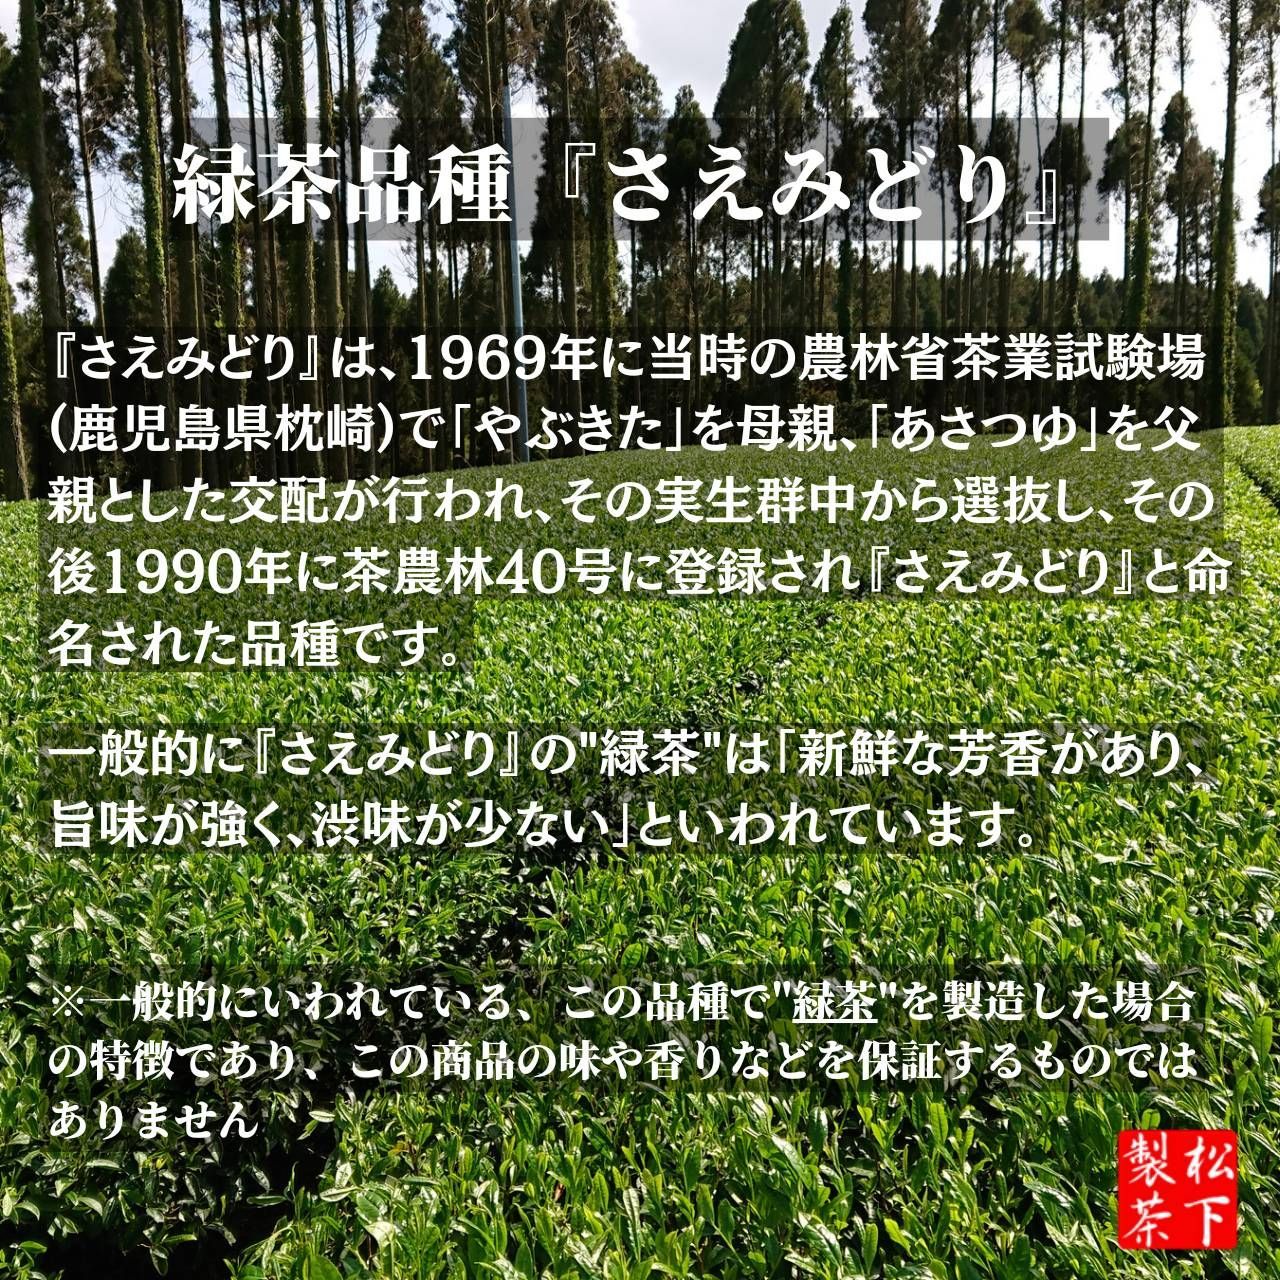 【2022年産】種子島の有機緑茶『さえみどり』 茶葉(リーフ) 100g-3